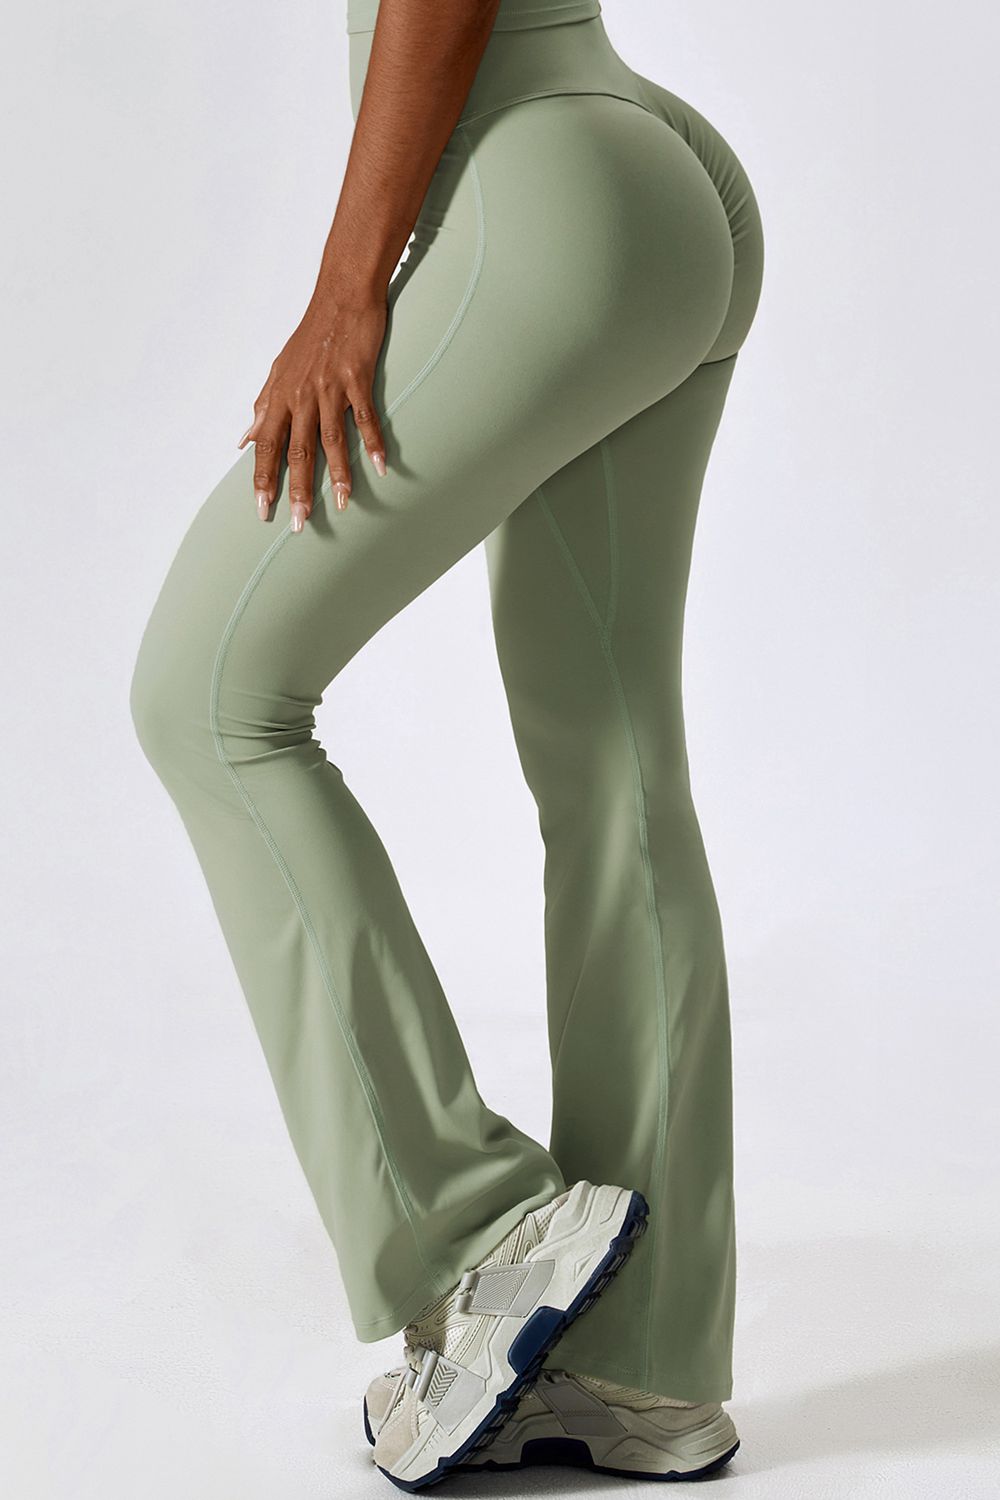 Memphis Grizzlies College Concepts Women's Linger Pants - Navy